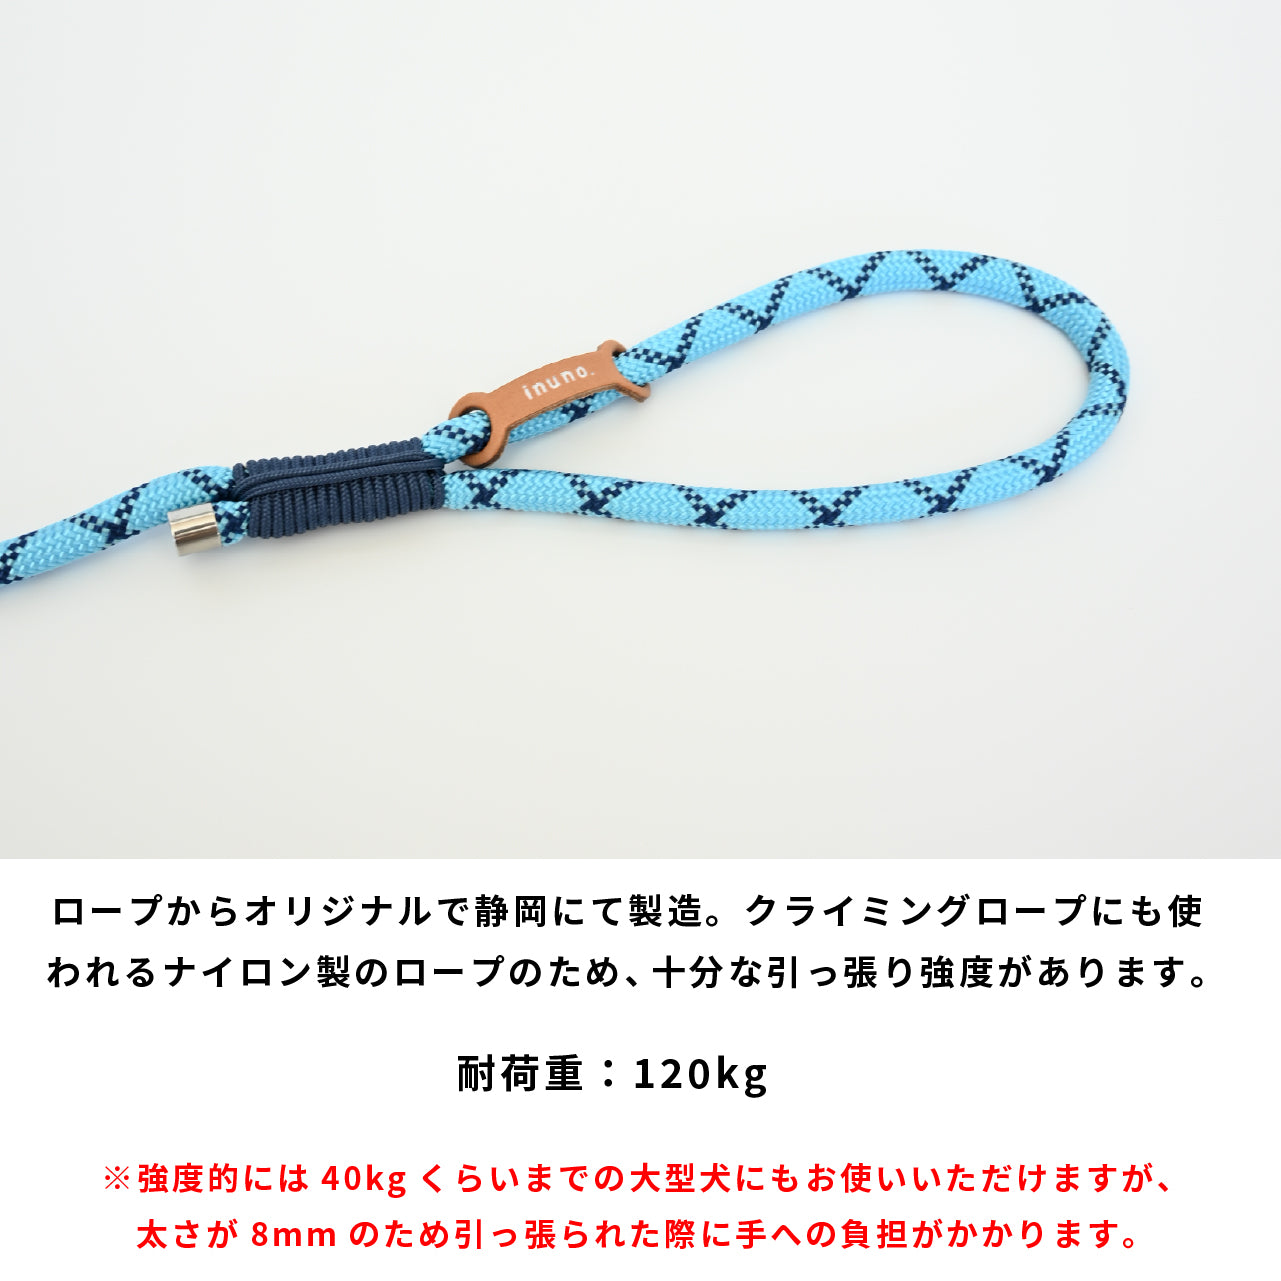 Rope Lead シアン×ネイビー